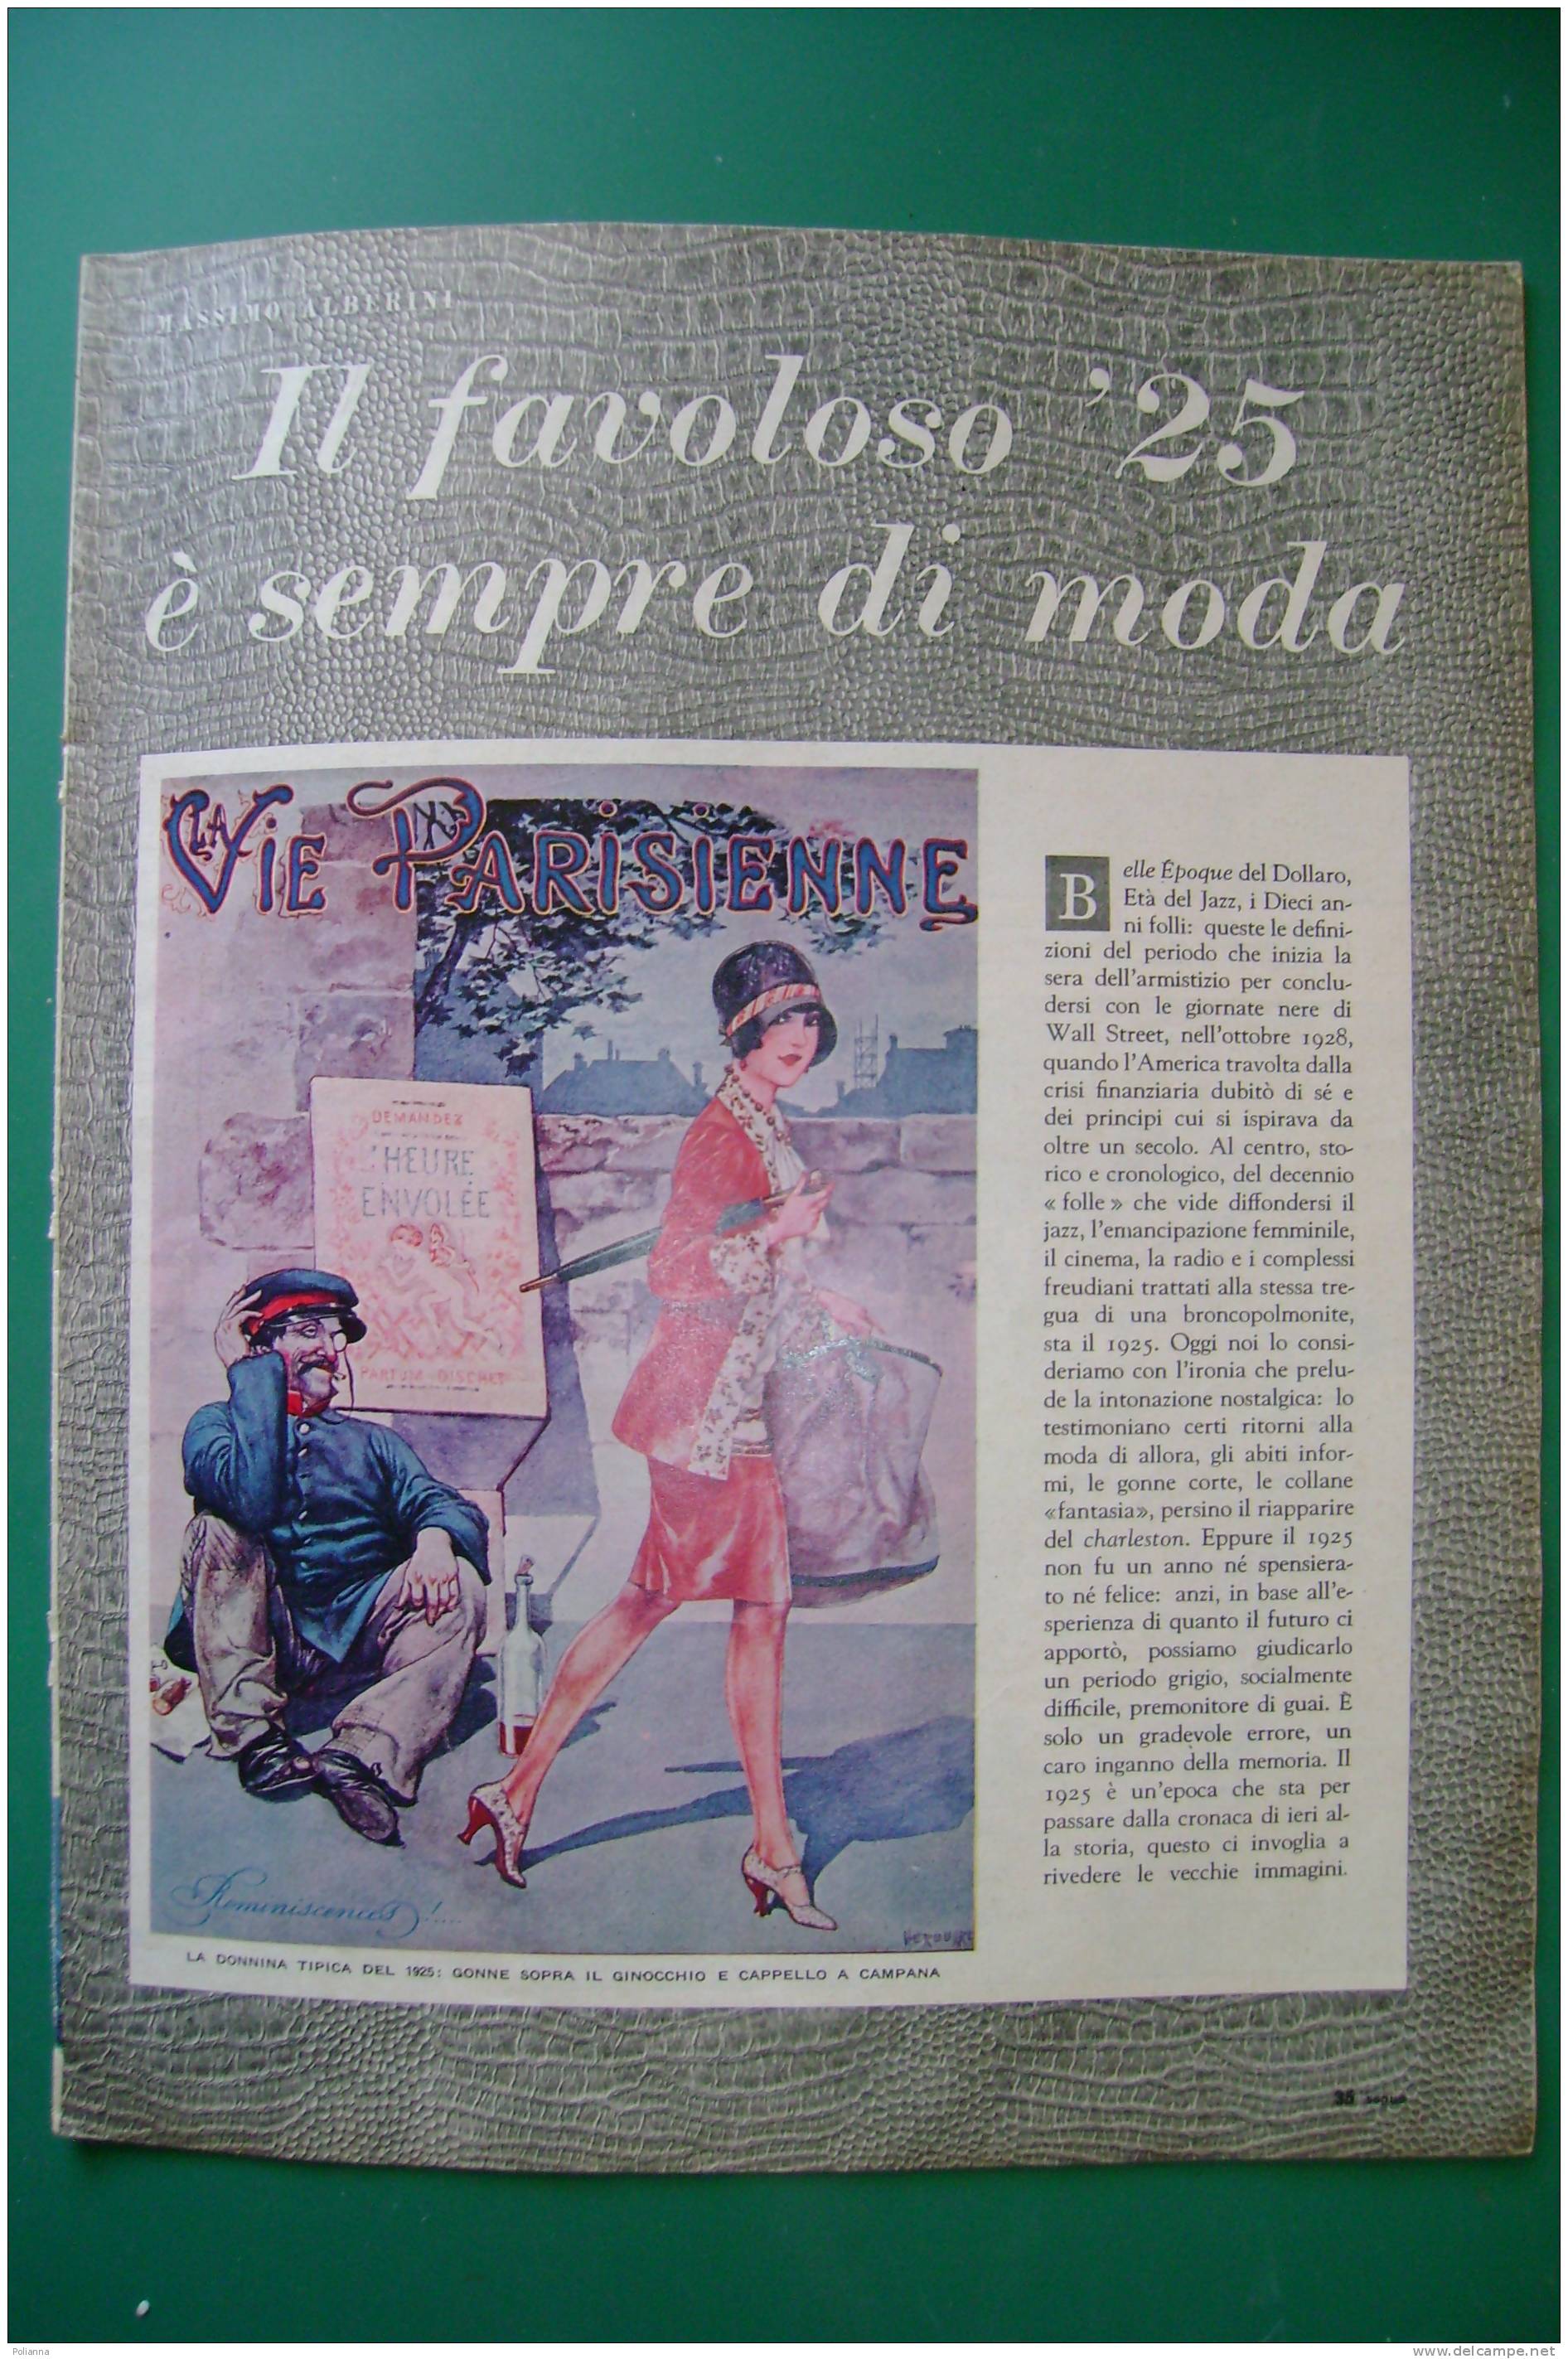 PDZ/37 Inserto Rivista EPOCA Anni '50 - Massimo Alberini IL FAVOLOSO '25/BELLE EPOQUE/JOSEPHINE BAKER/STORIA DEL BOUNTY - Cinema